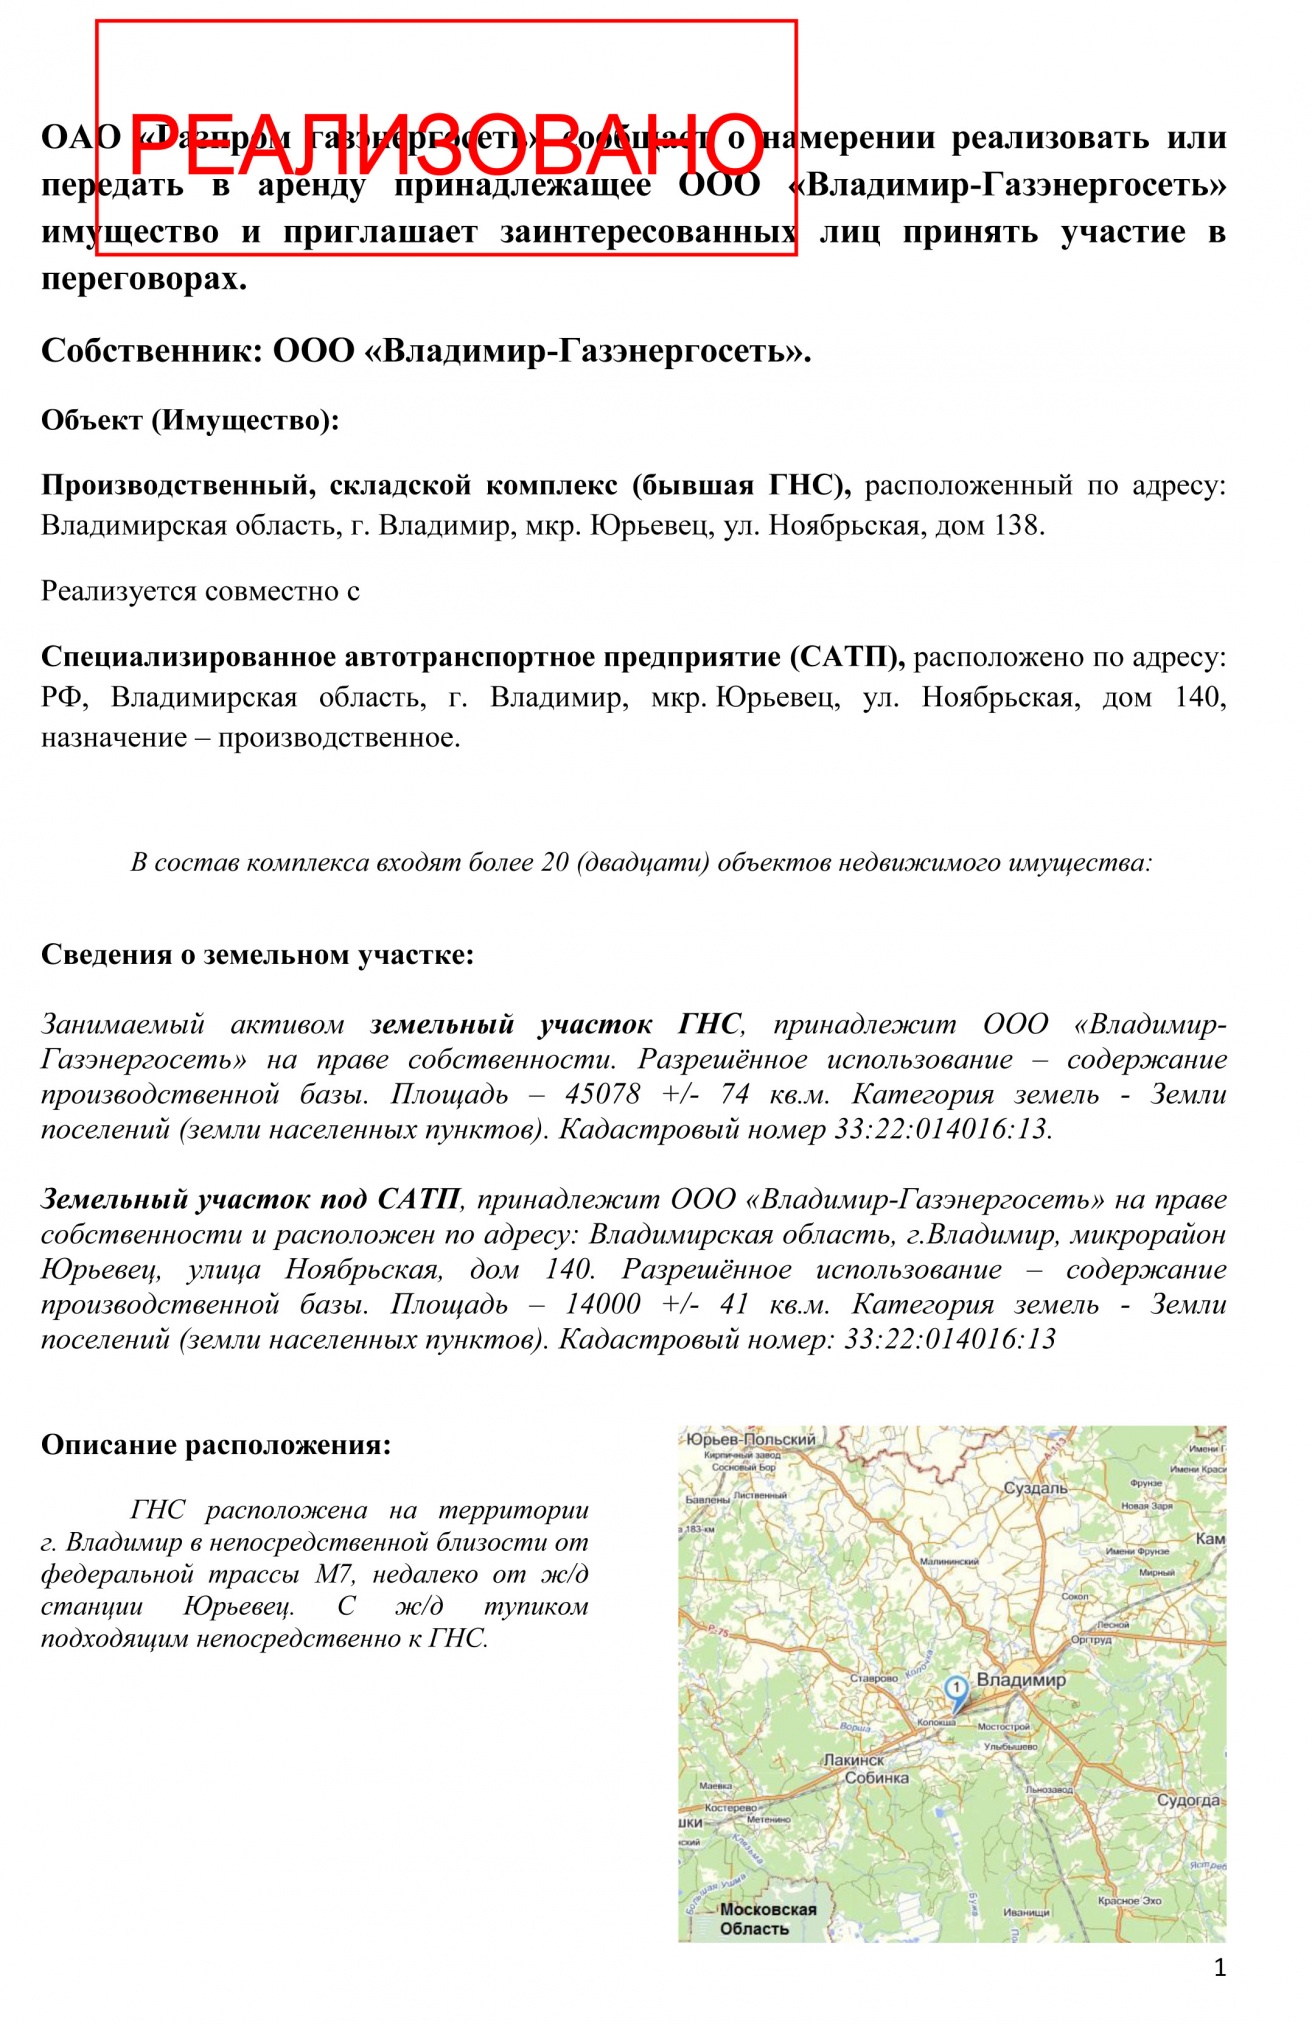 lend_Gazprom_descr.jpg